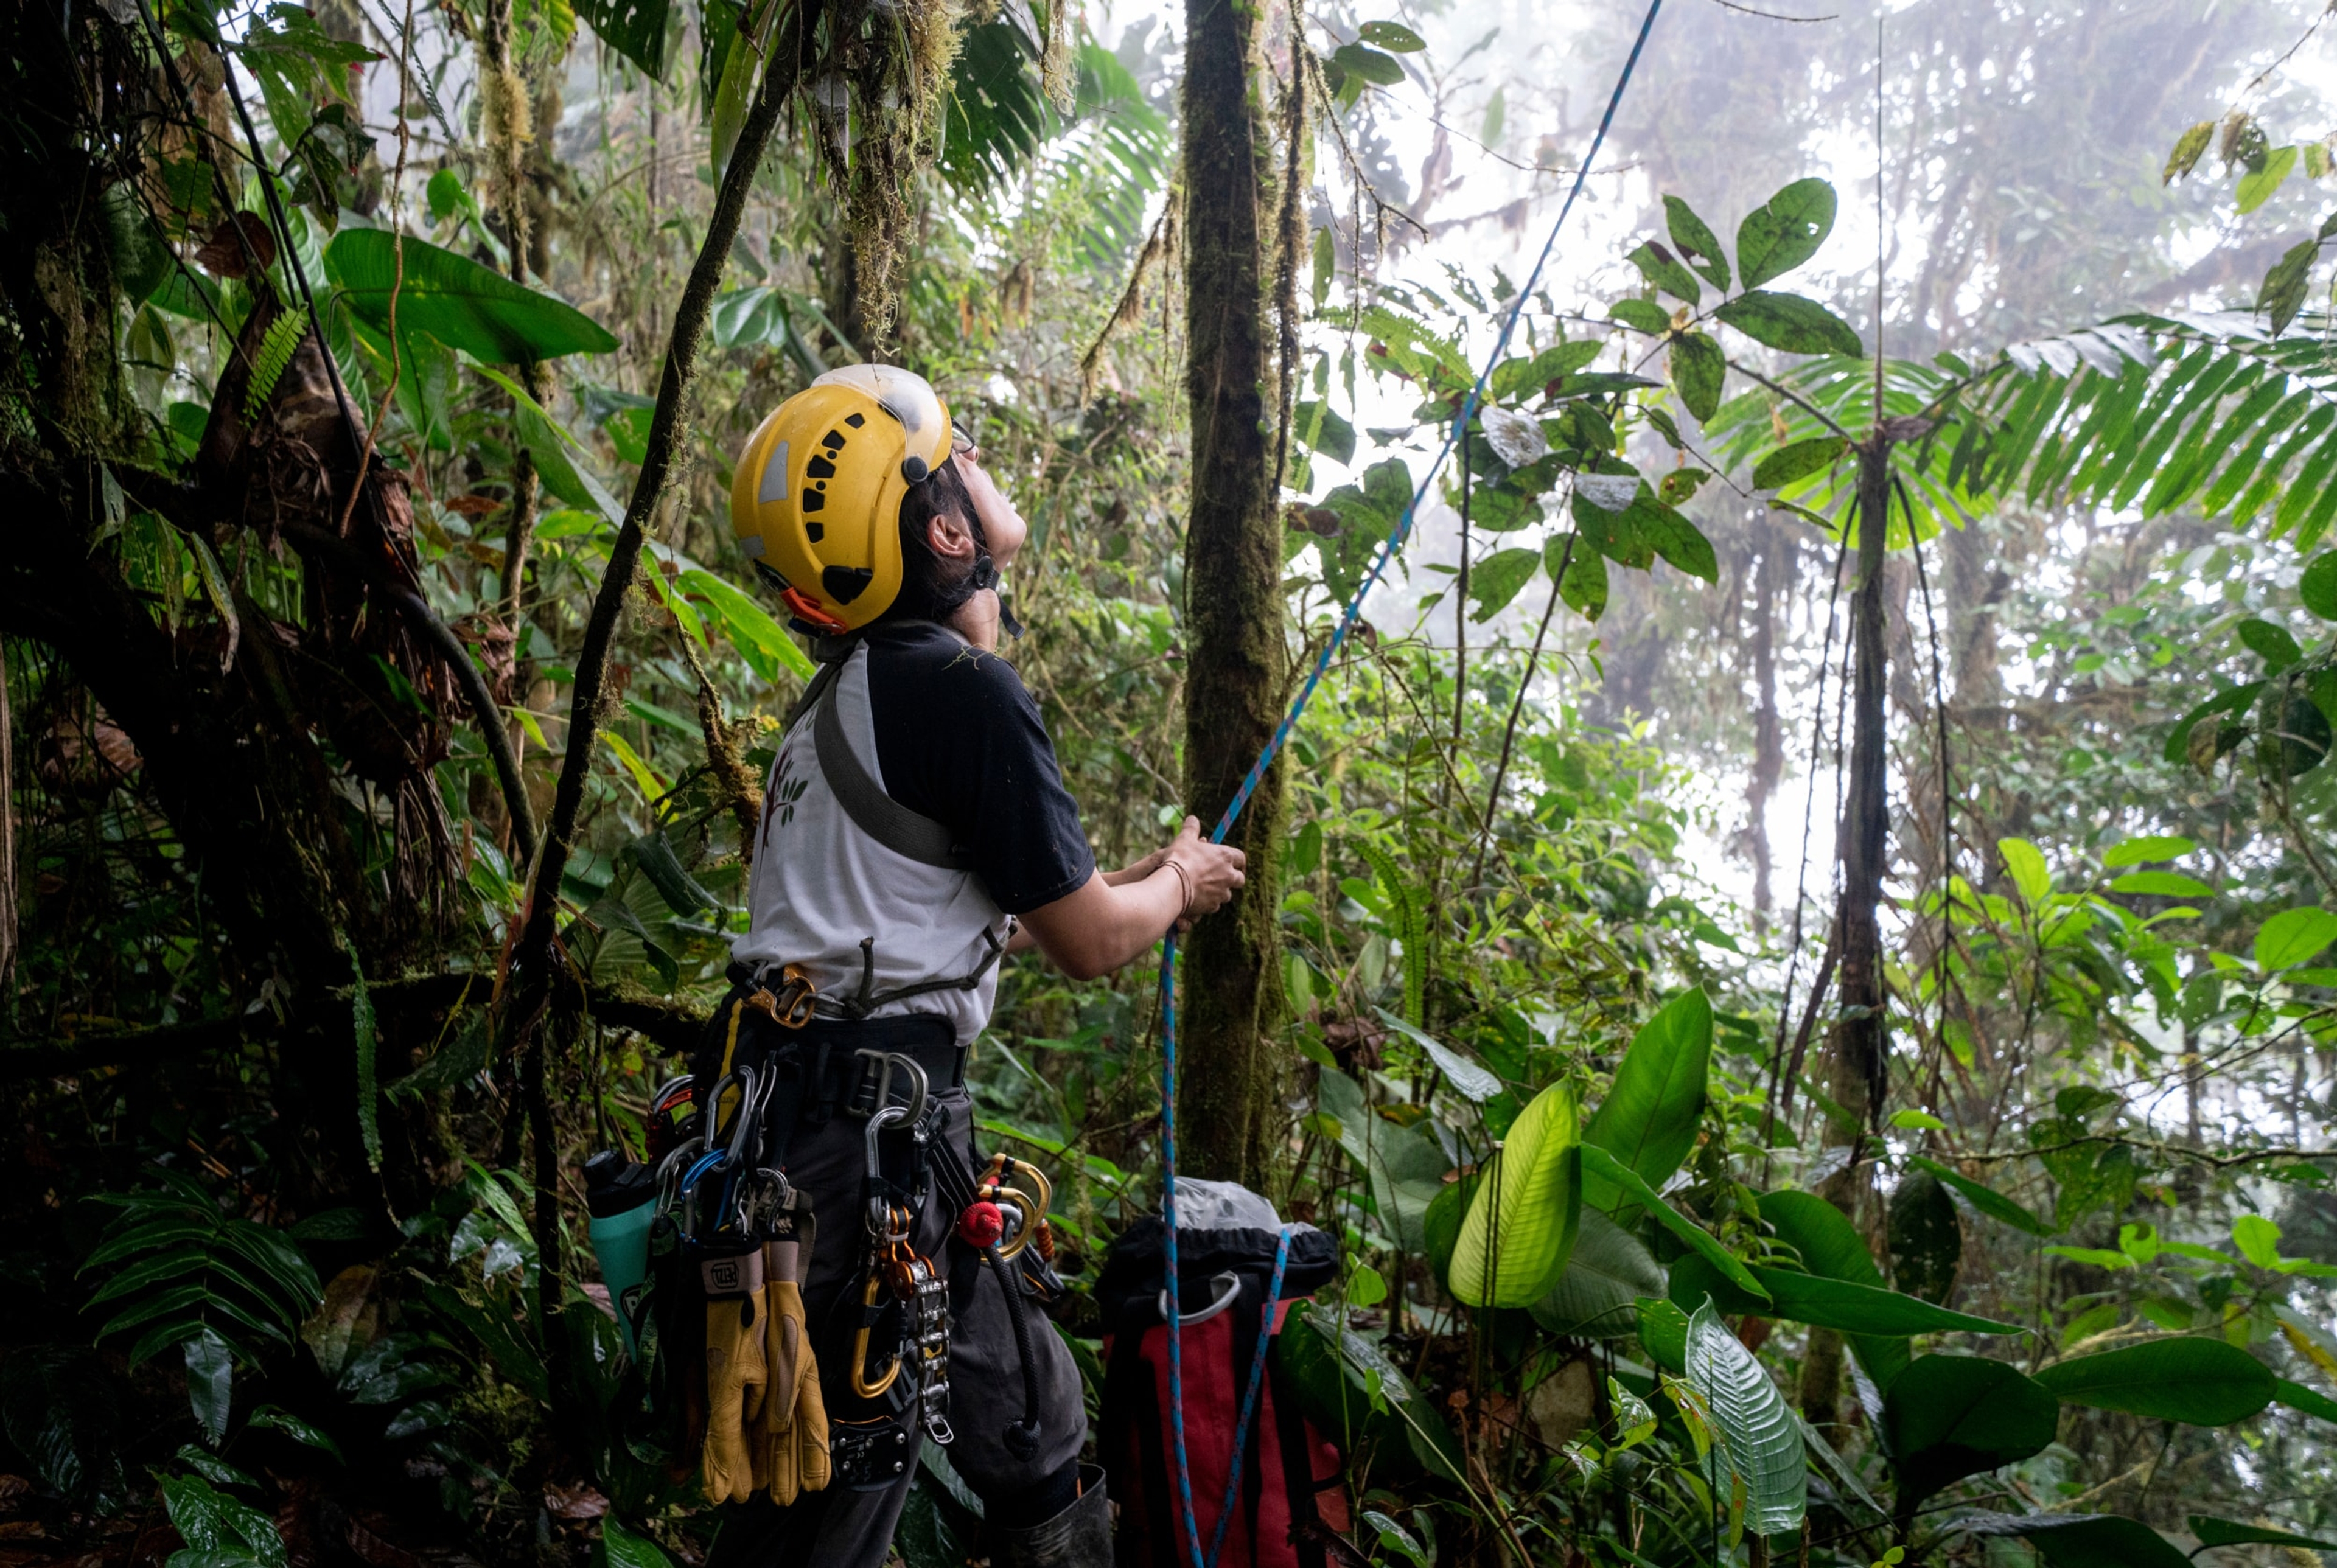 Sademetsän suojelutyöryhmän jäsen tutkimassa puuta sademetsässä